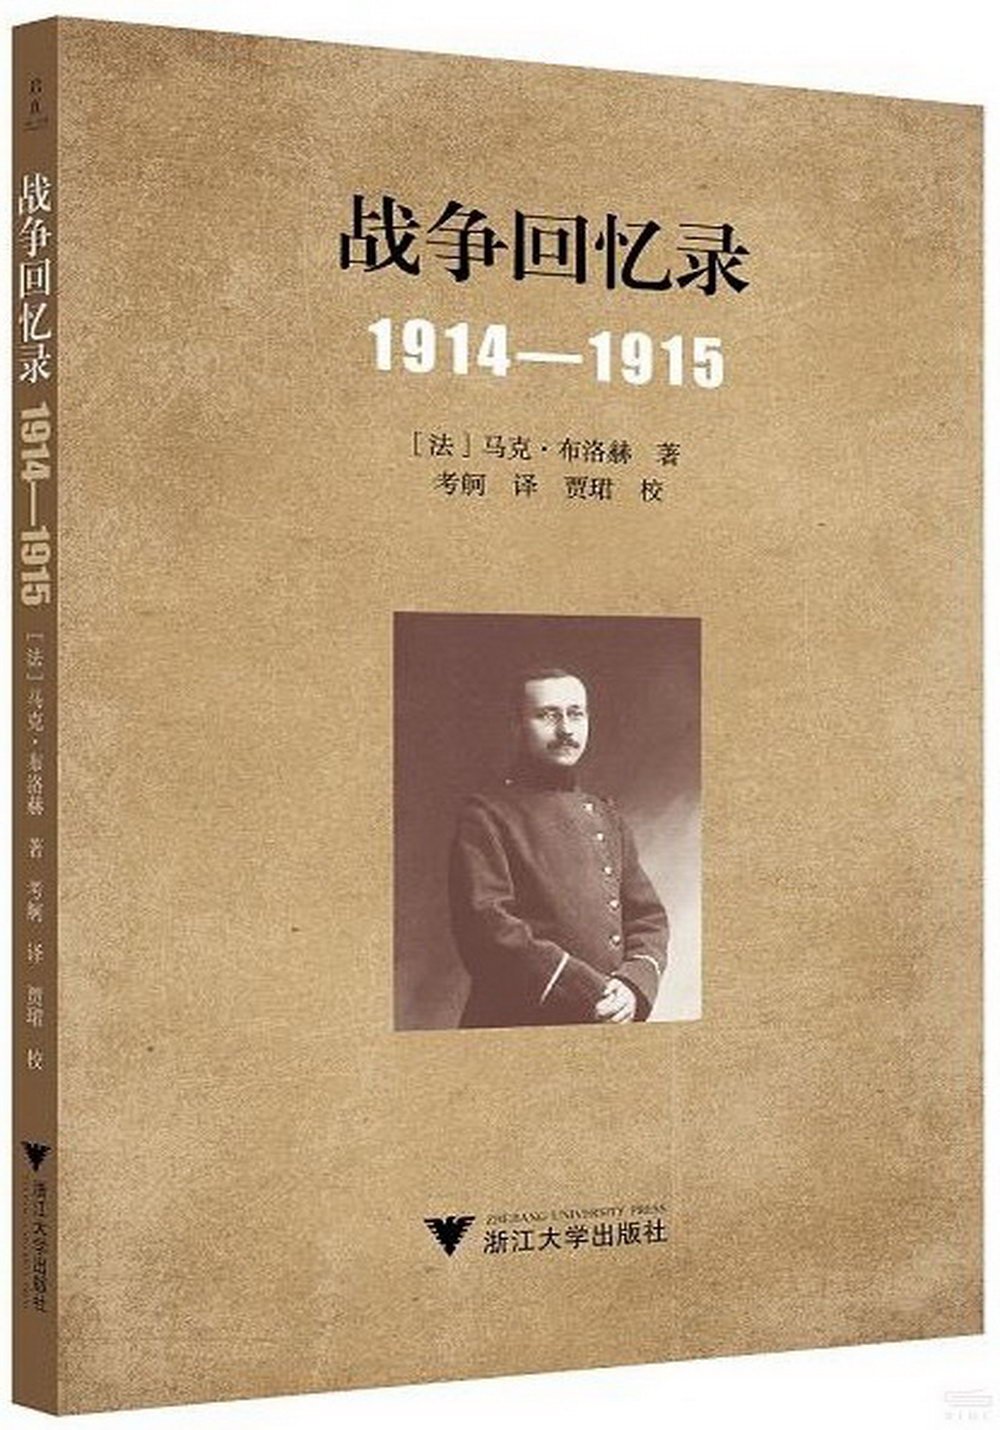 戰爭回憶錄(1914-1915)